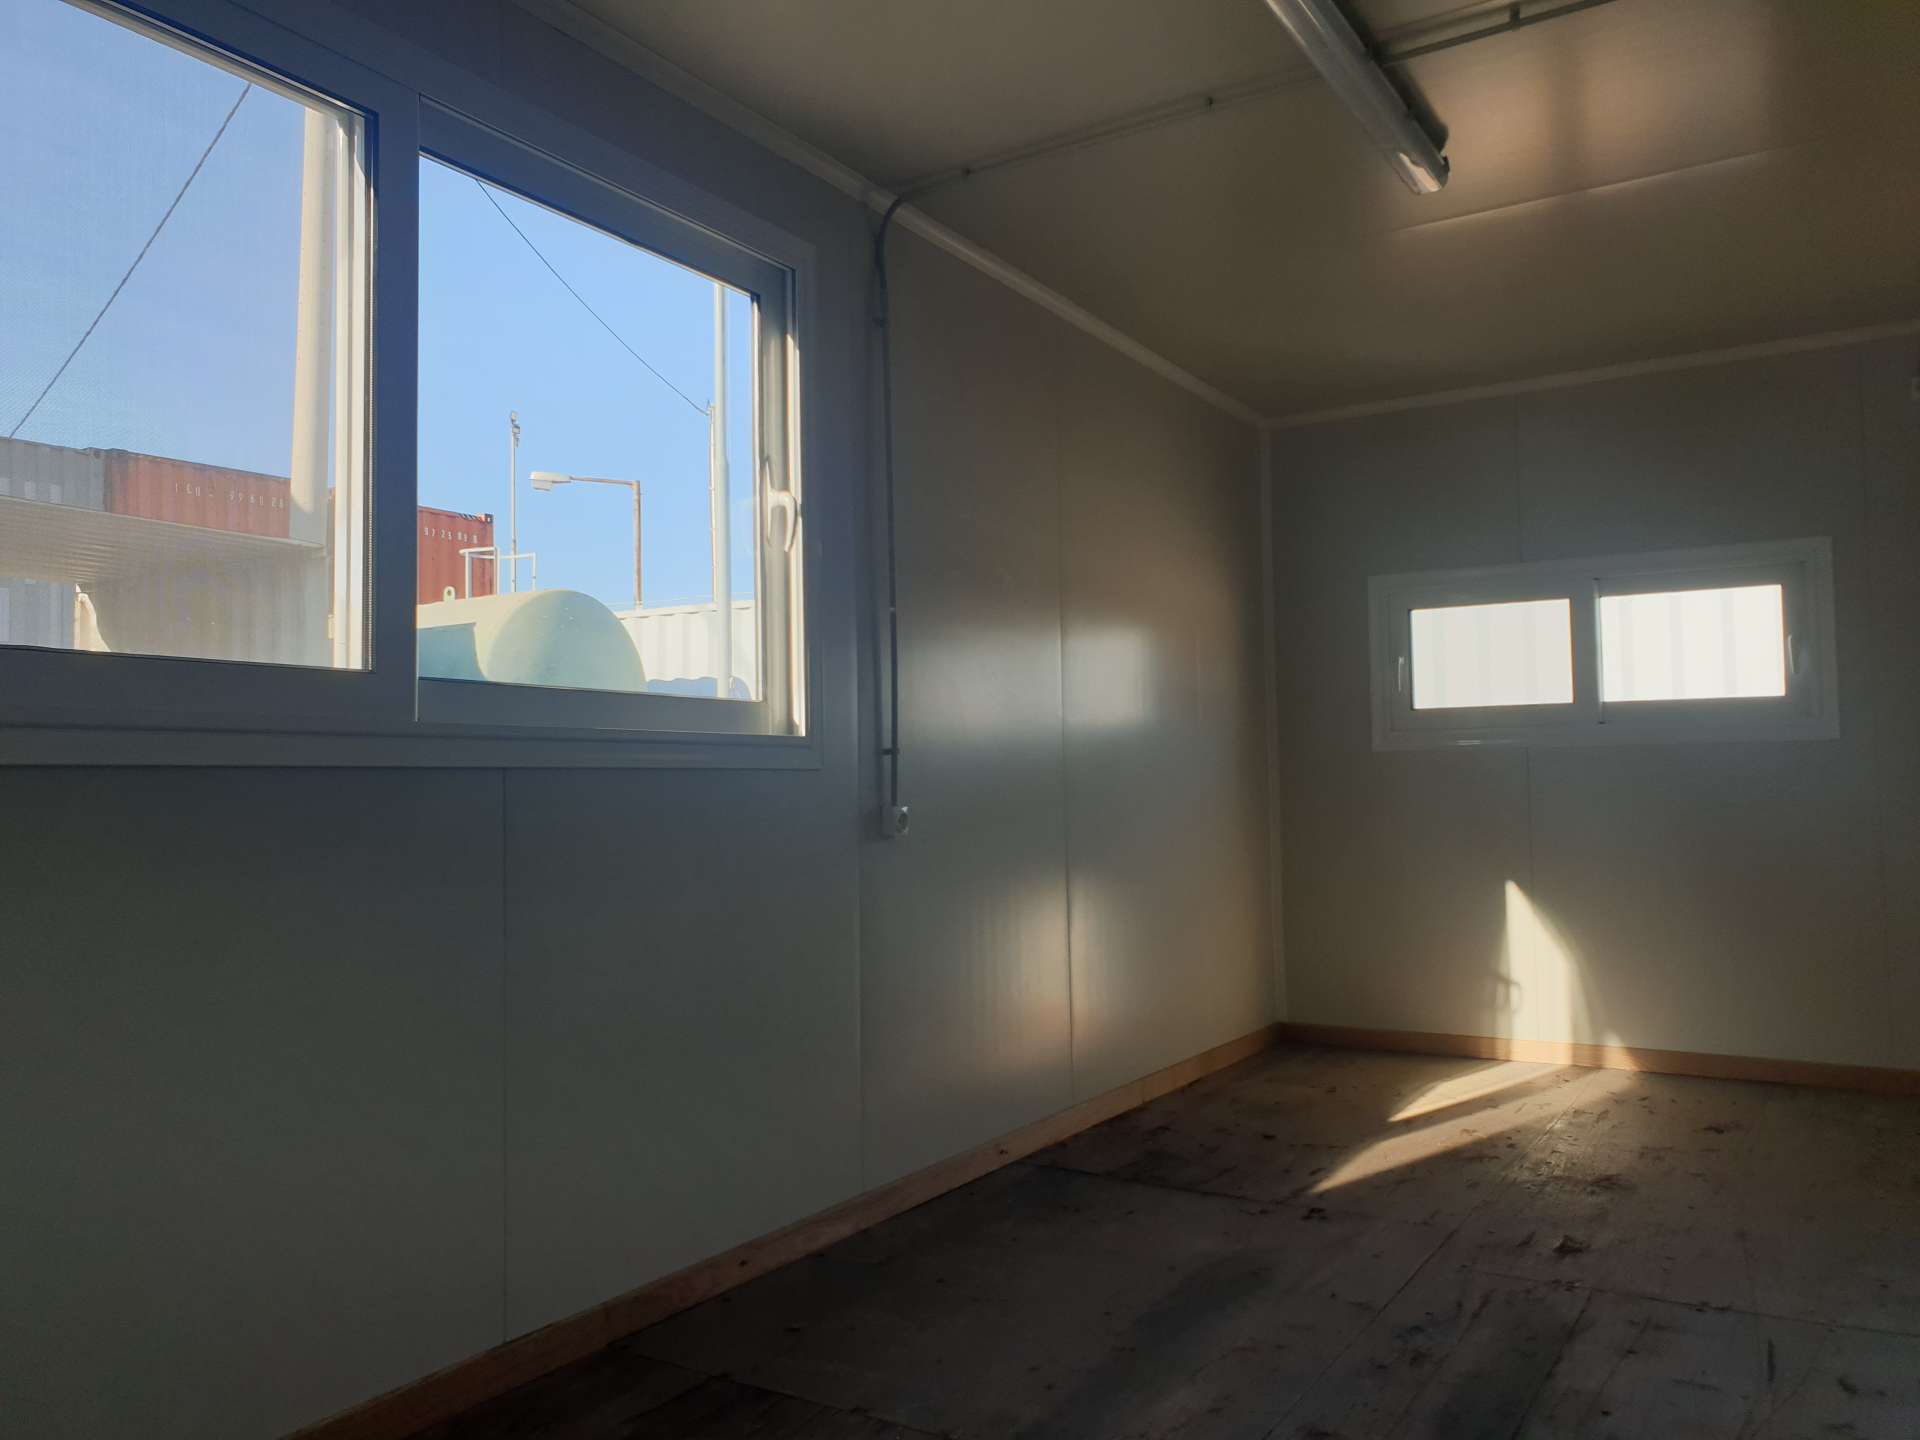 Γραφείο με 2 παράθυρα χρησιμοποιώντας ένα εξάμετρο μεταχειρισμένο container